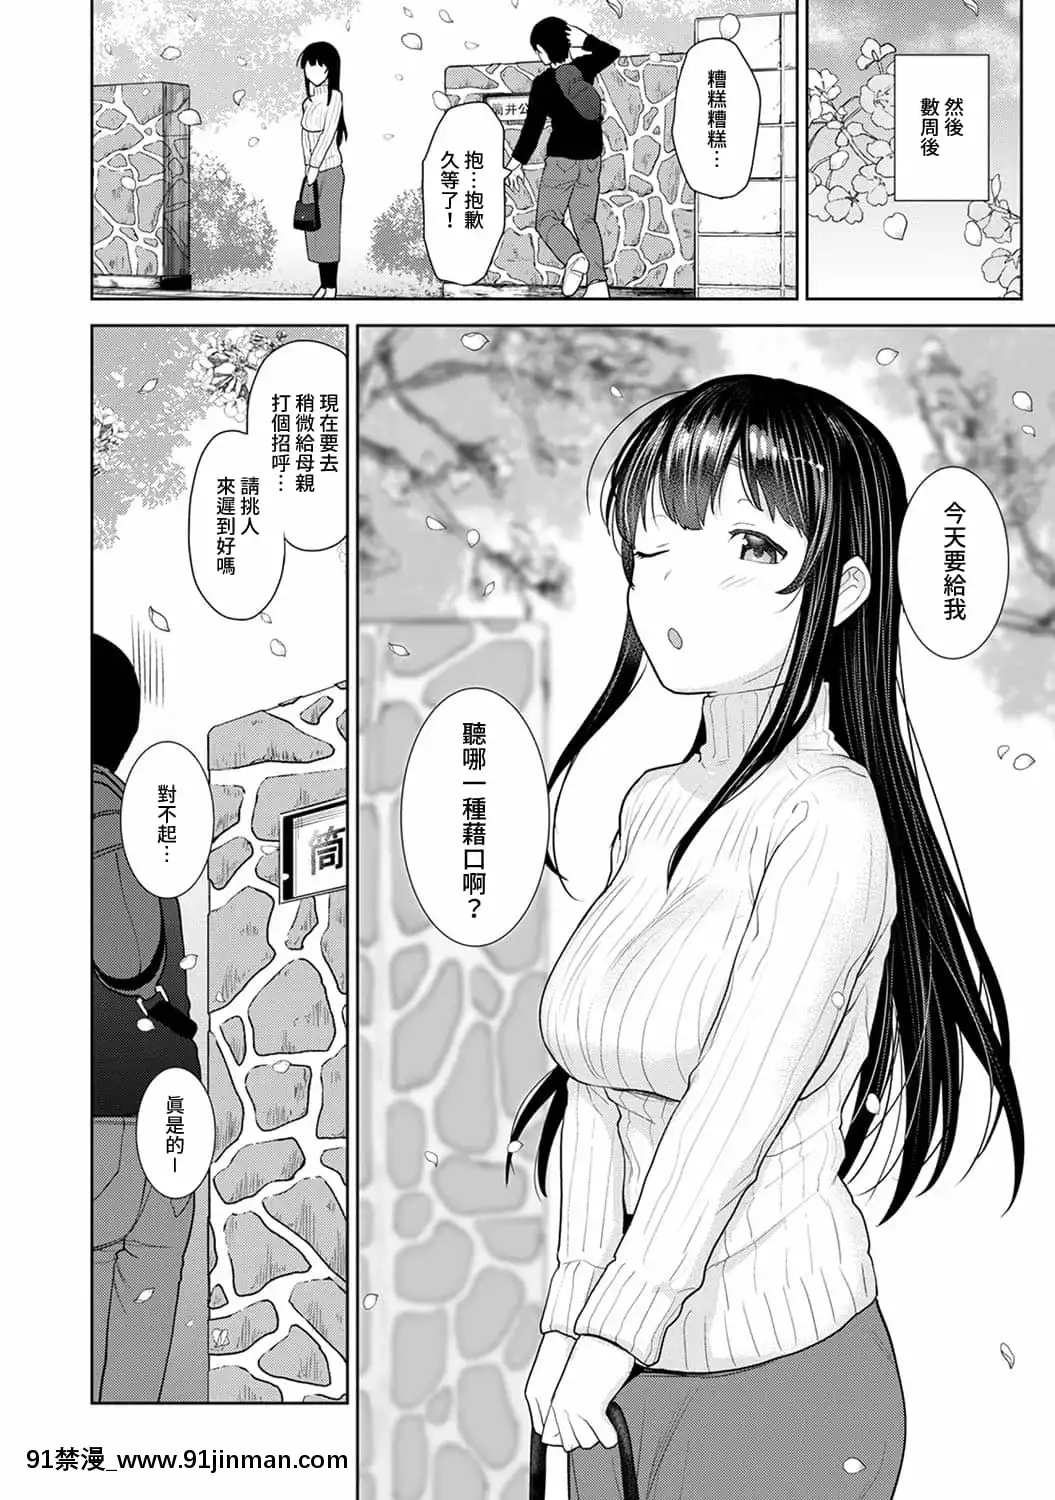 Ném đi cuốn tạp chí khiêu dâm, và đứa bé sẽ bị móc! Còn còn có chuyện xảy ra nữa.【haruna kantai collection hentai】